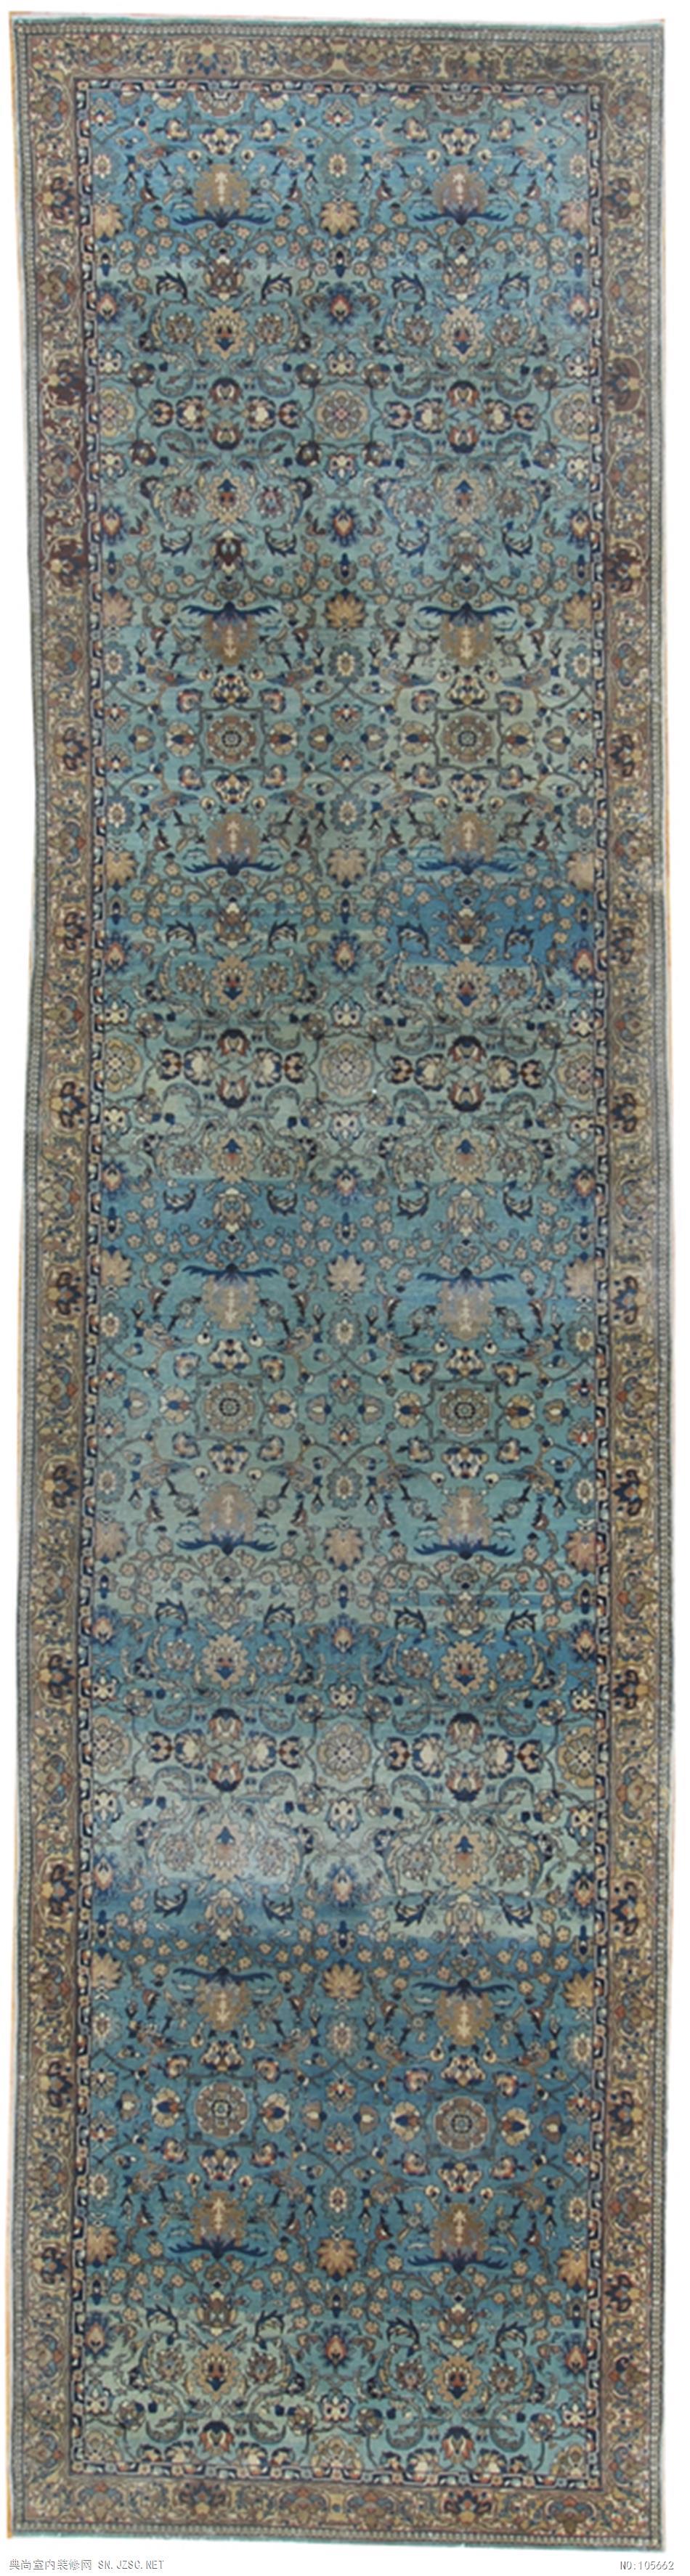 欧式风格地毯 (166)